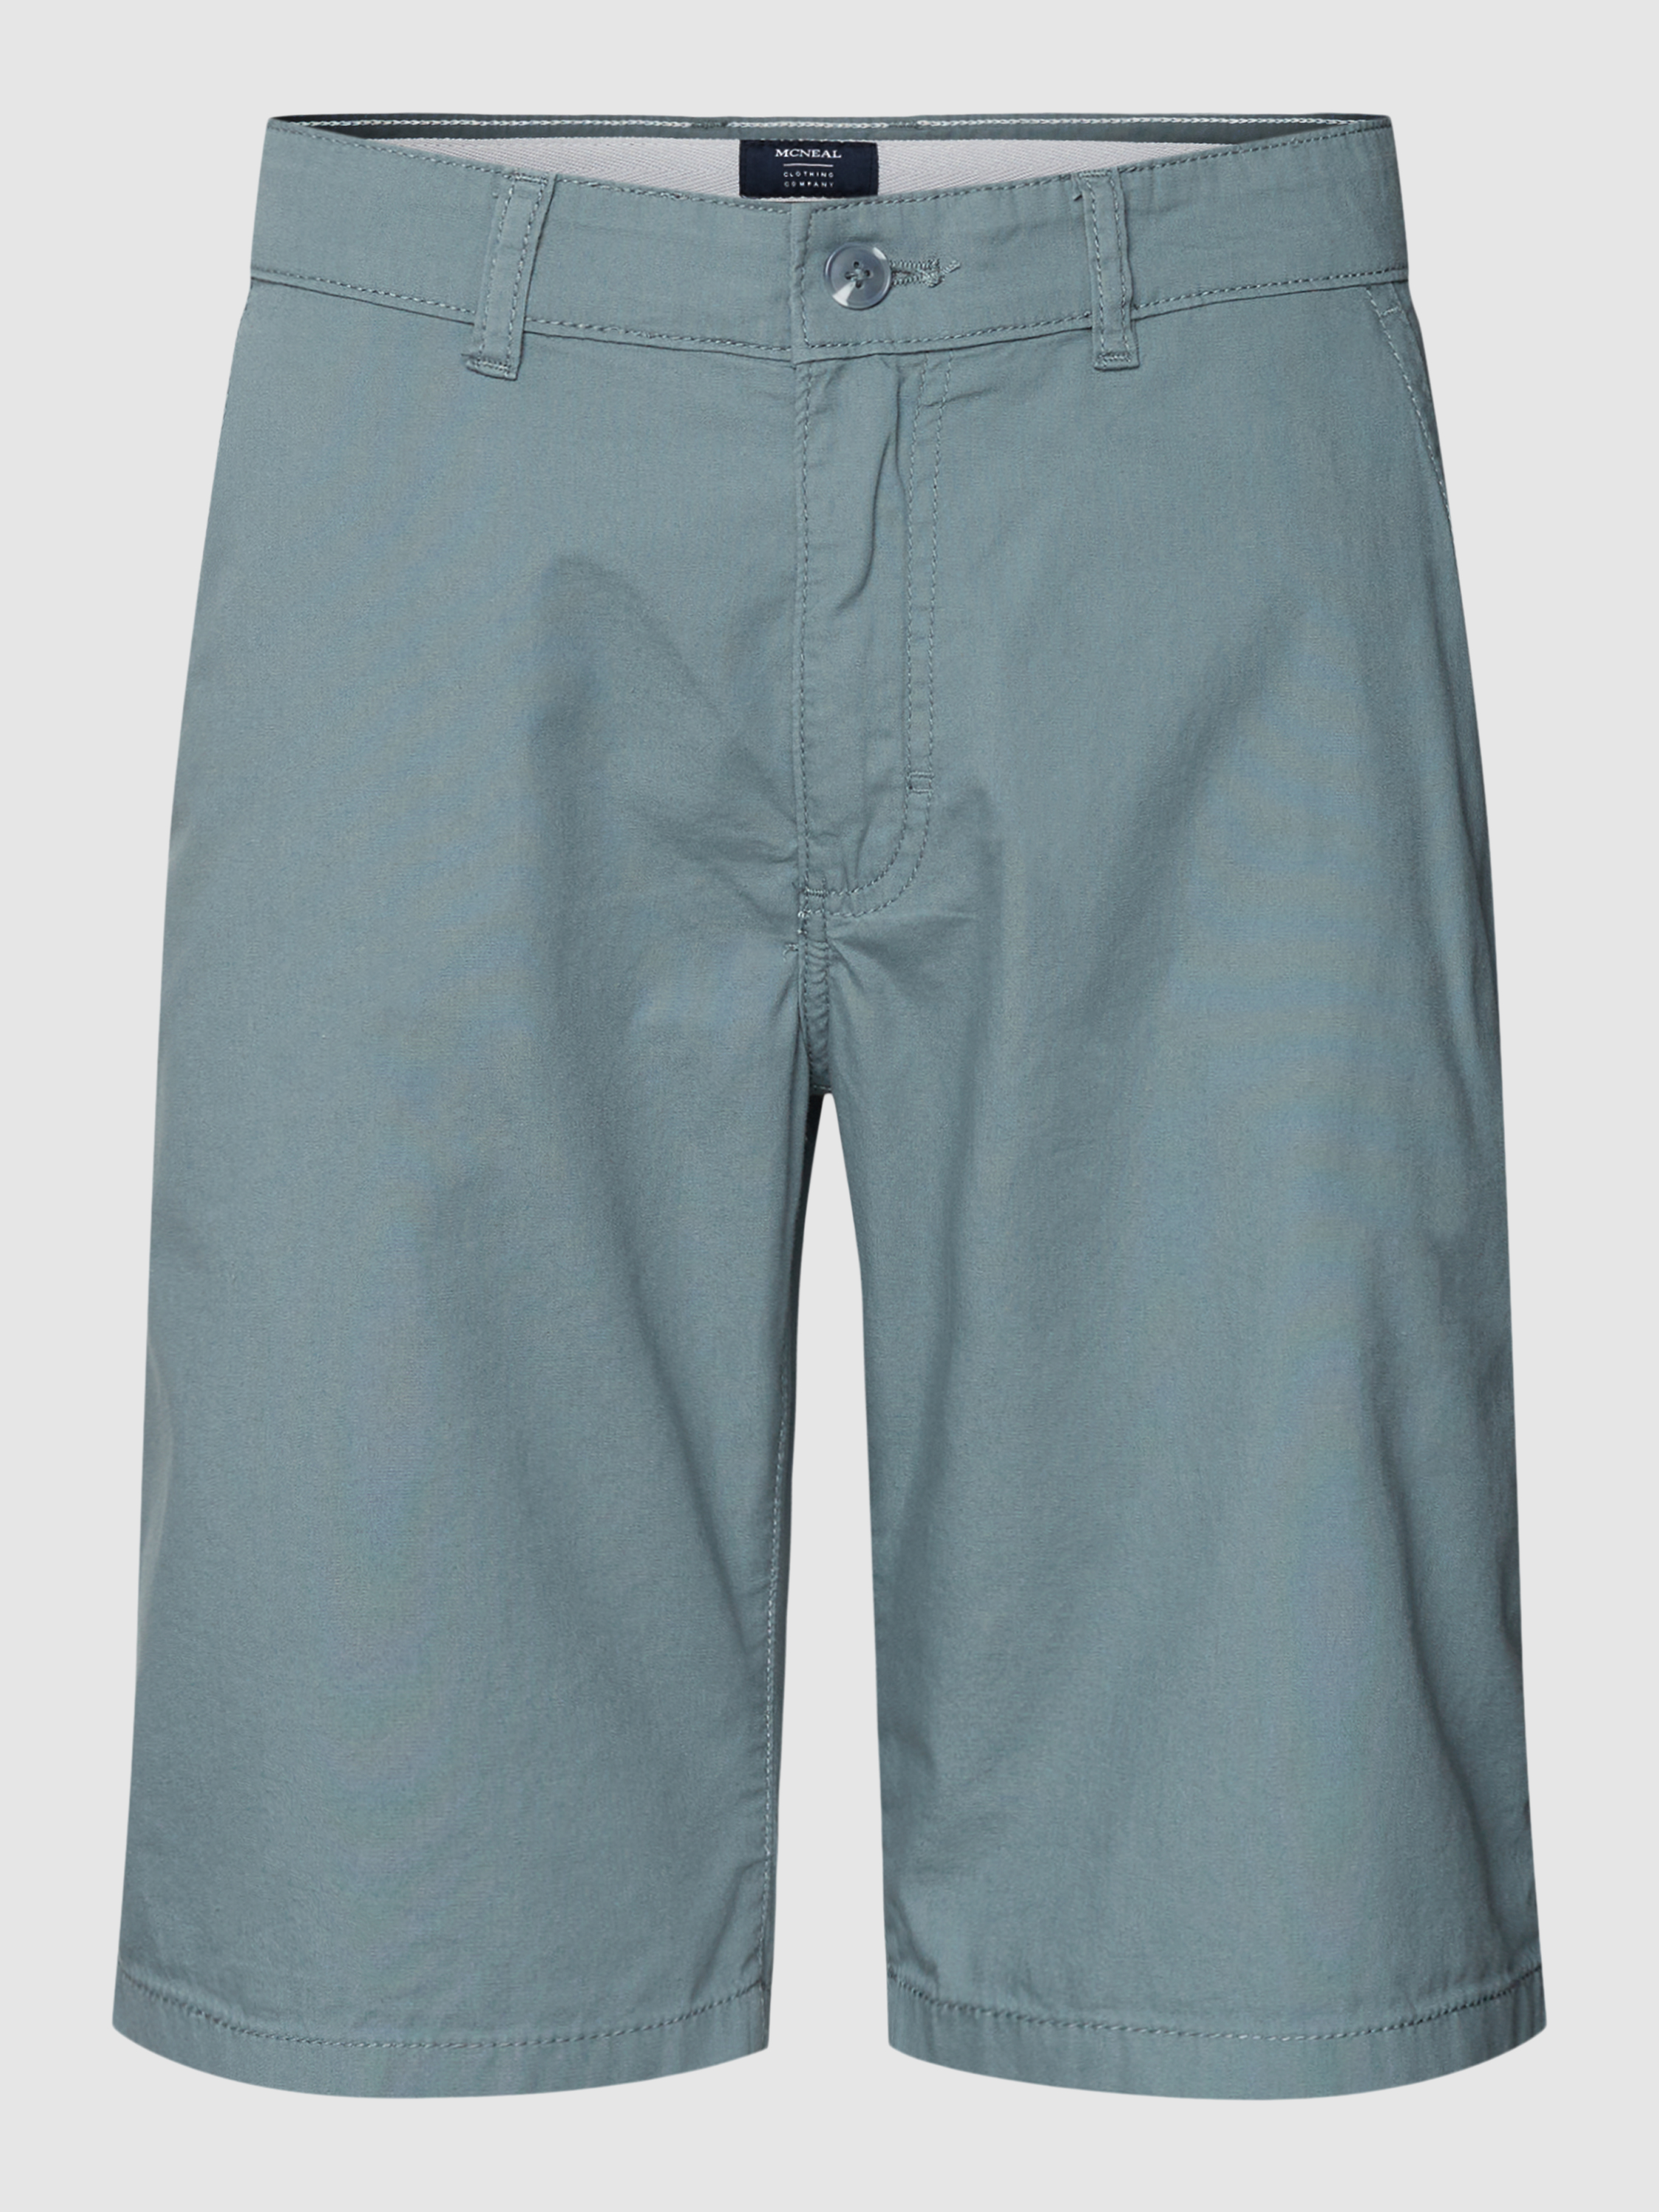 Повседневные шорты мужские McNeal 1771228 голубые L (доставка из-за рубежа)